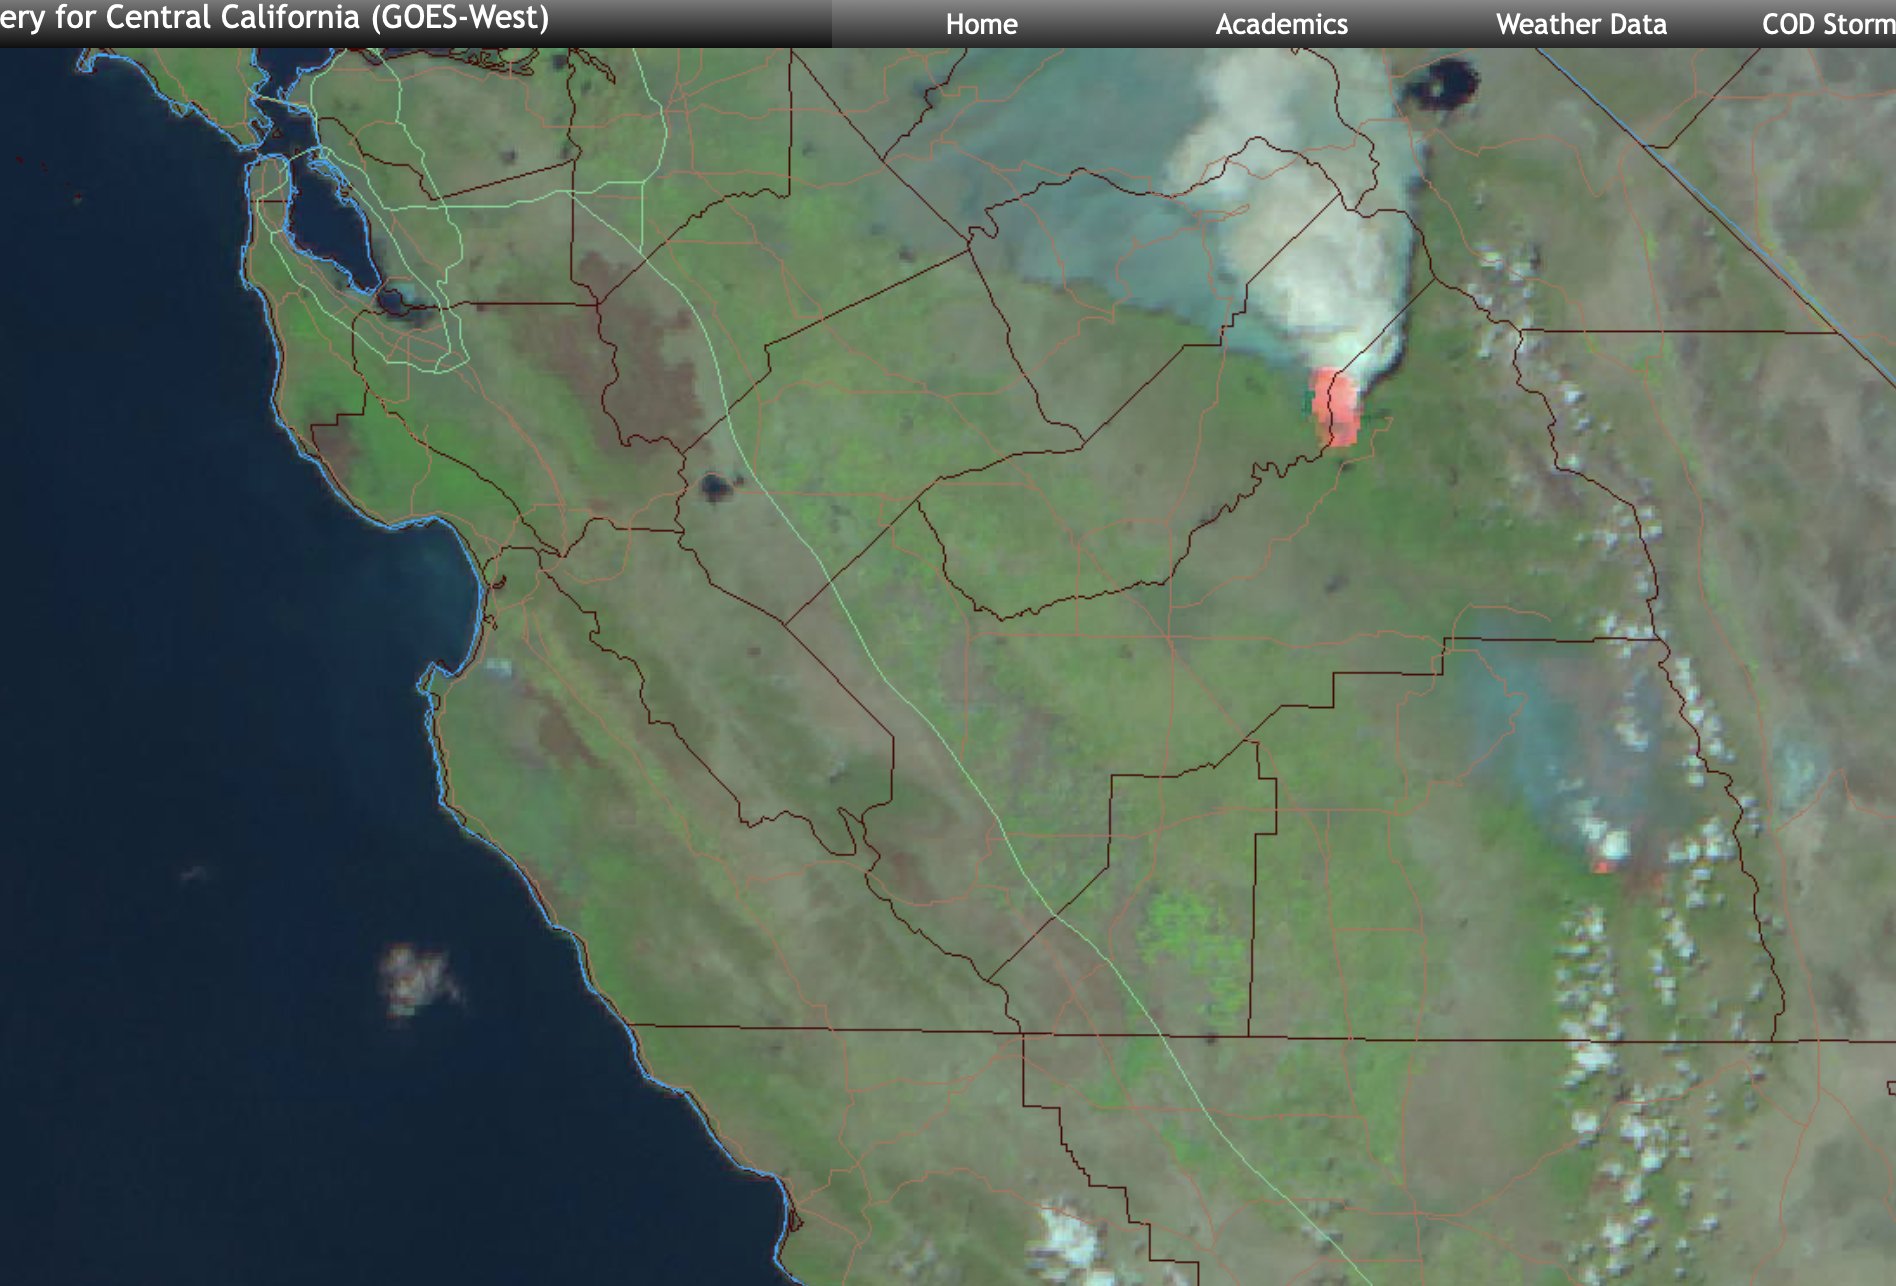 La vista de satélite muestra la ubicación de la nube cerca del incendio.